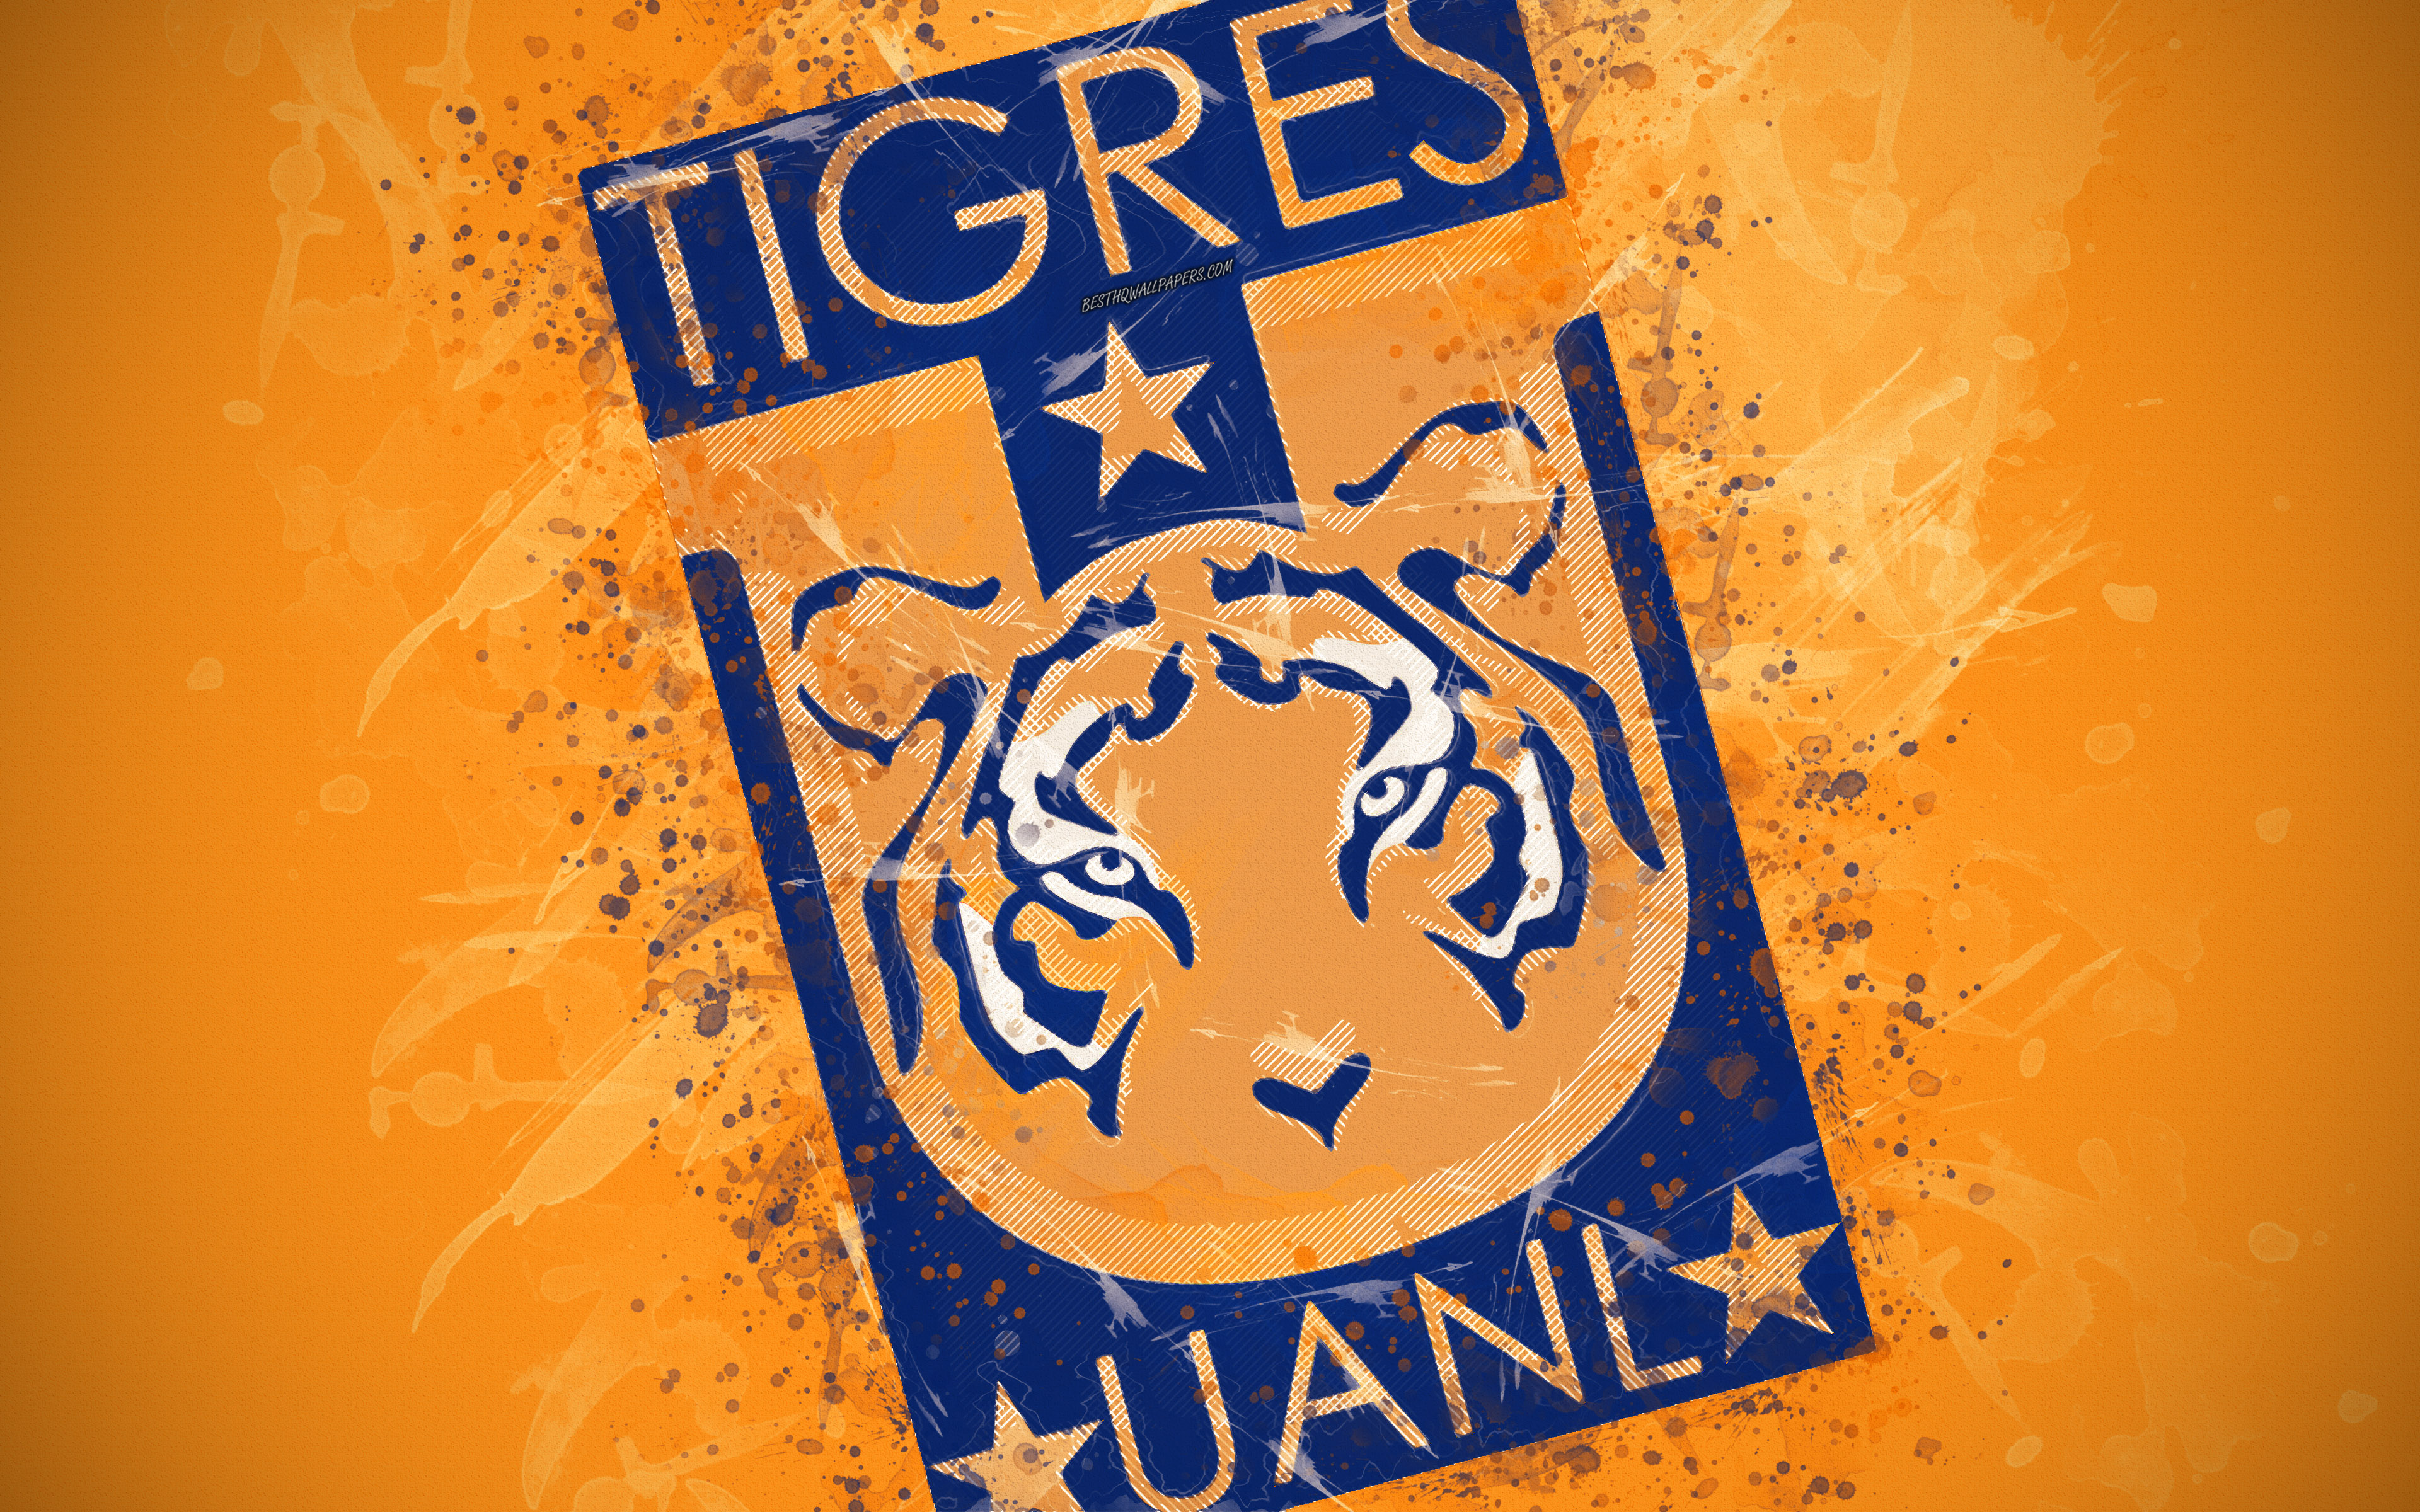 Tigres Uanl, 4k, Paint Art, Creative, Mexican Football - Fondos De Tigres De Monterrey , HD Wallpaper & Backgrounds